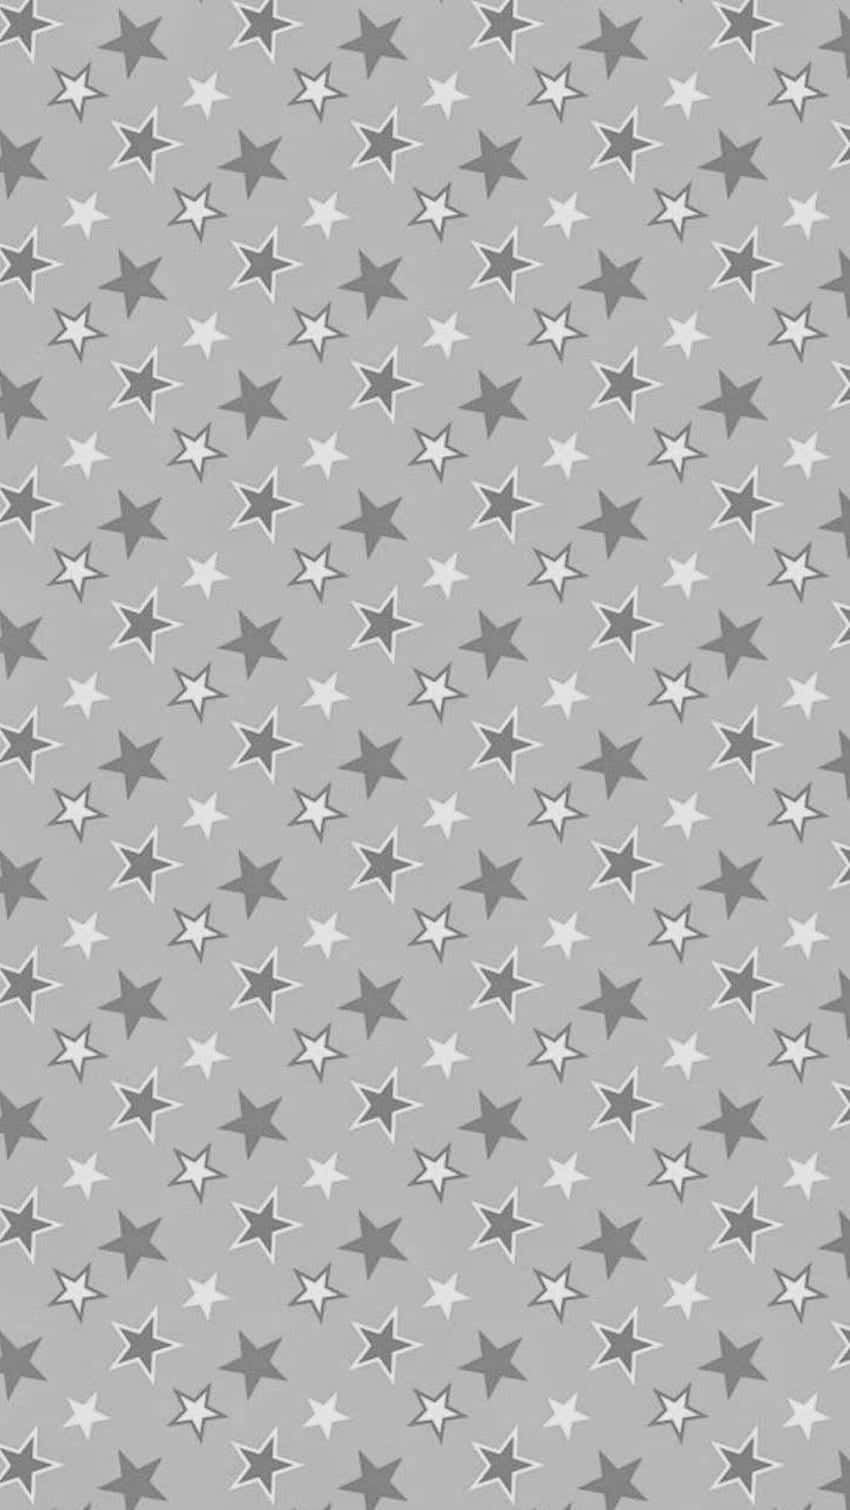 Artegráfico De Estrellas Lindas En Blanco Y Gris. Fondo de pantalla